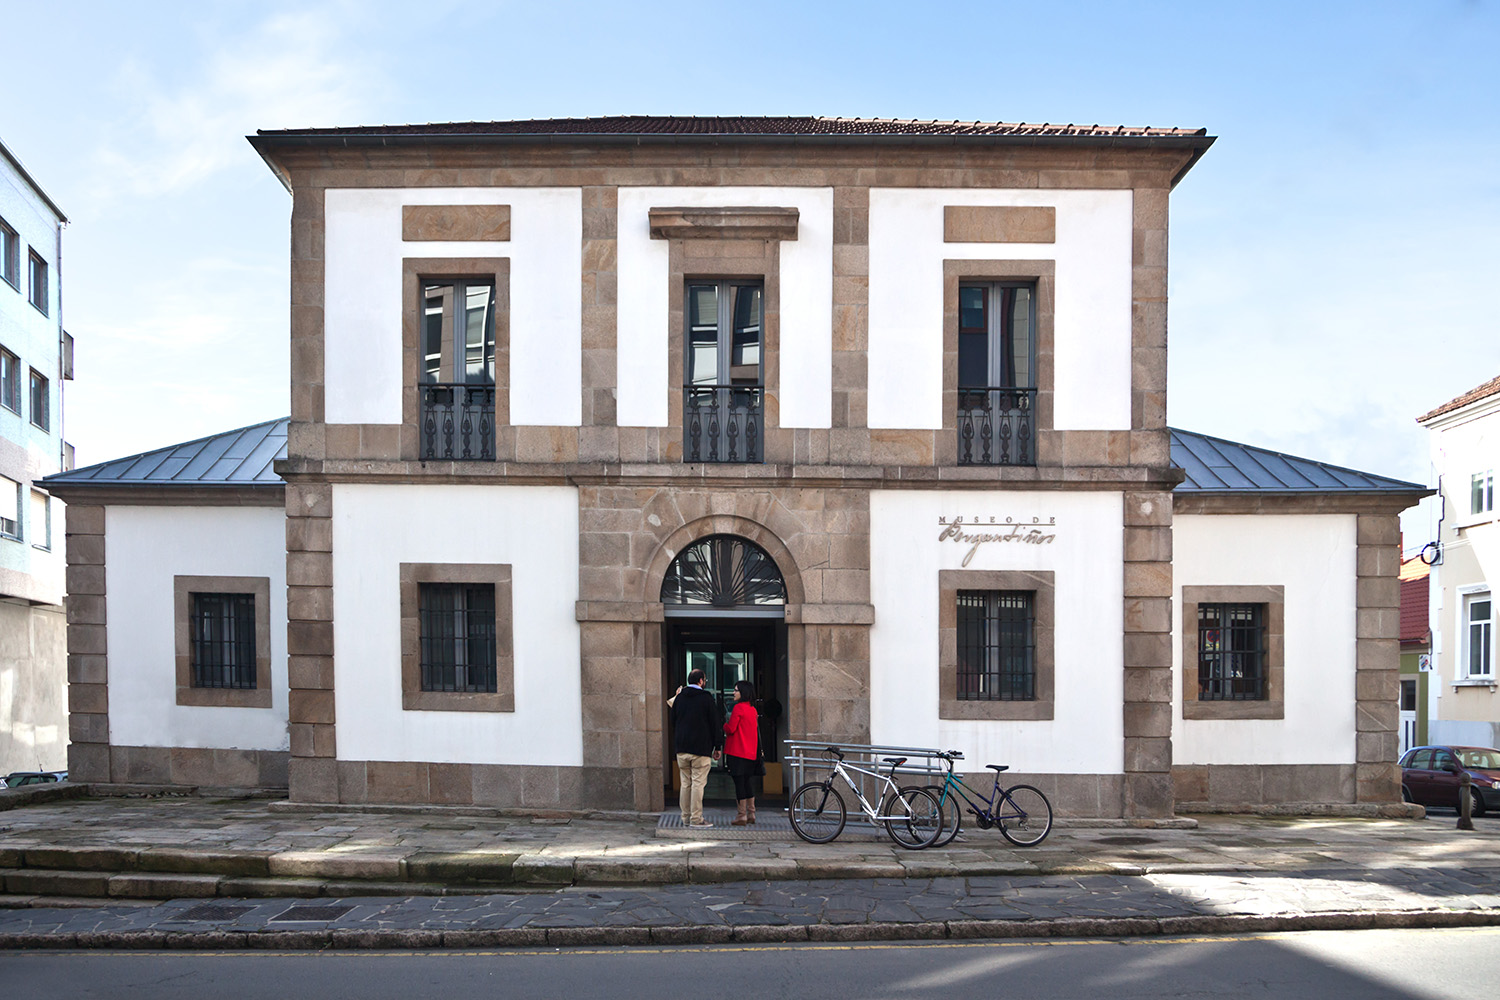 Museo de Bergantiños